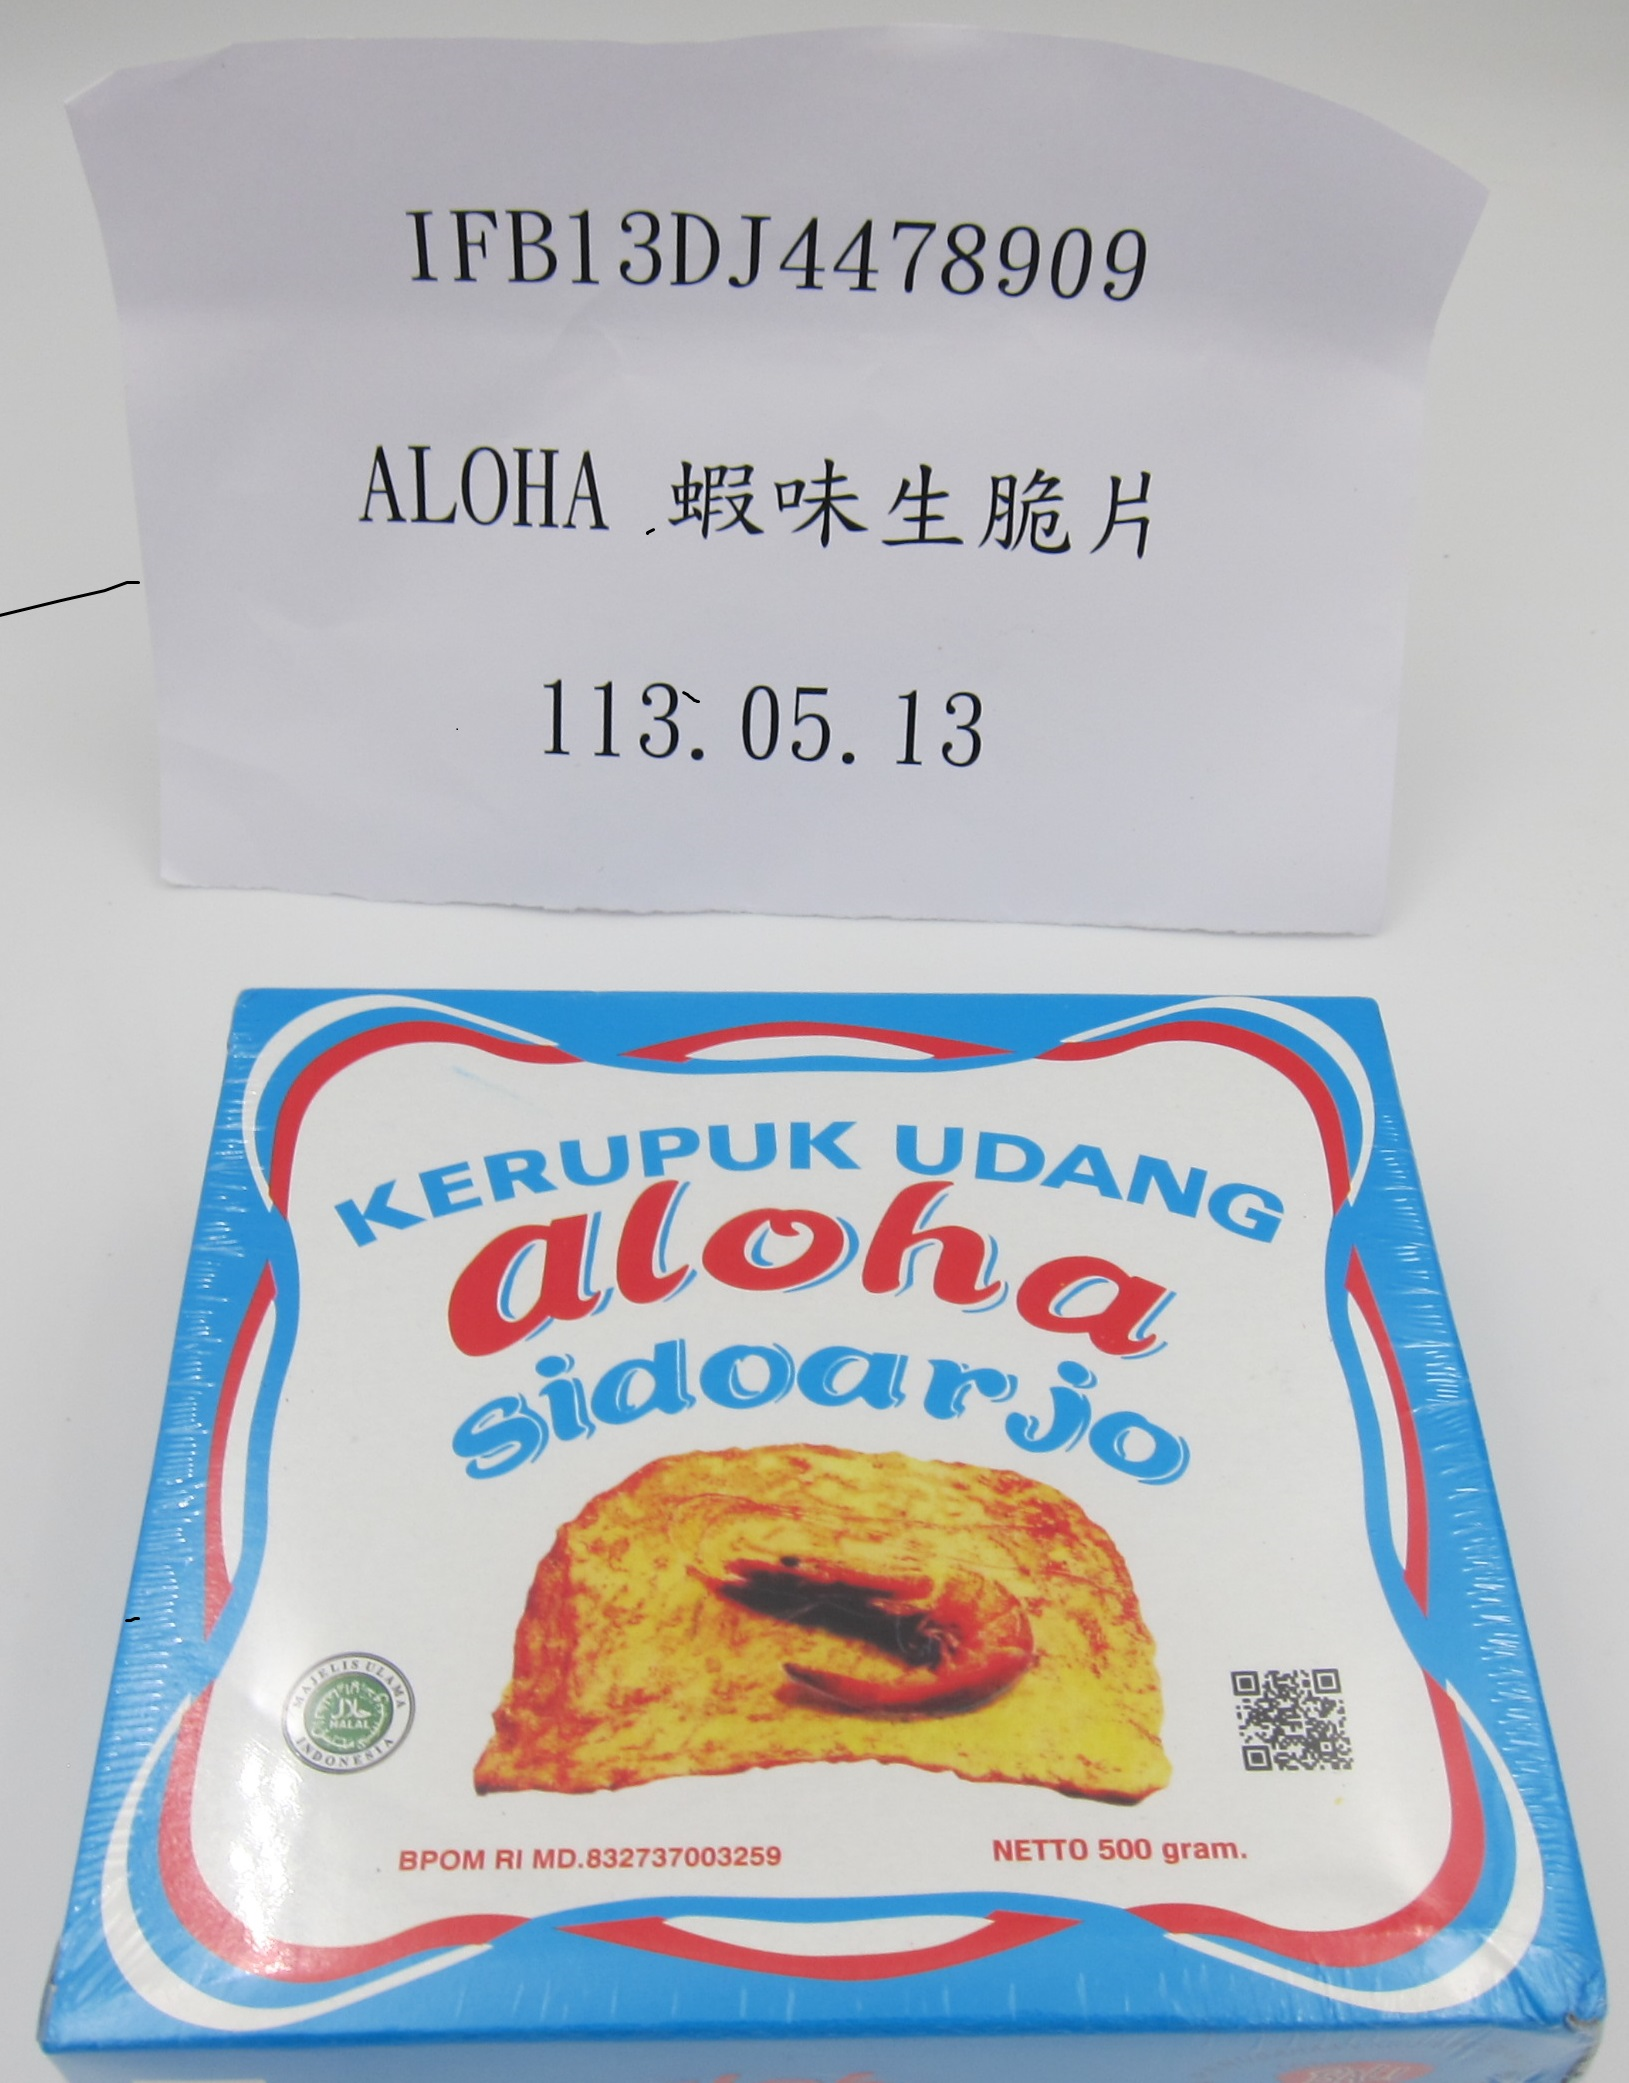 防腐劑含量不符規定的印尼蝦味生脆片。圖/取自食藥署官網